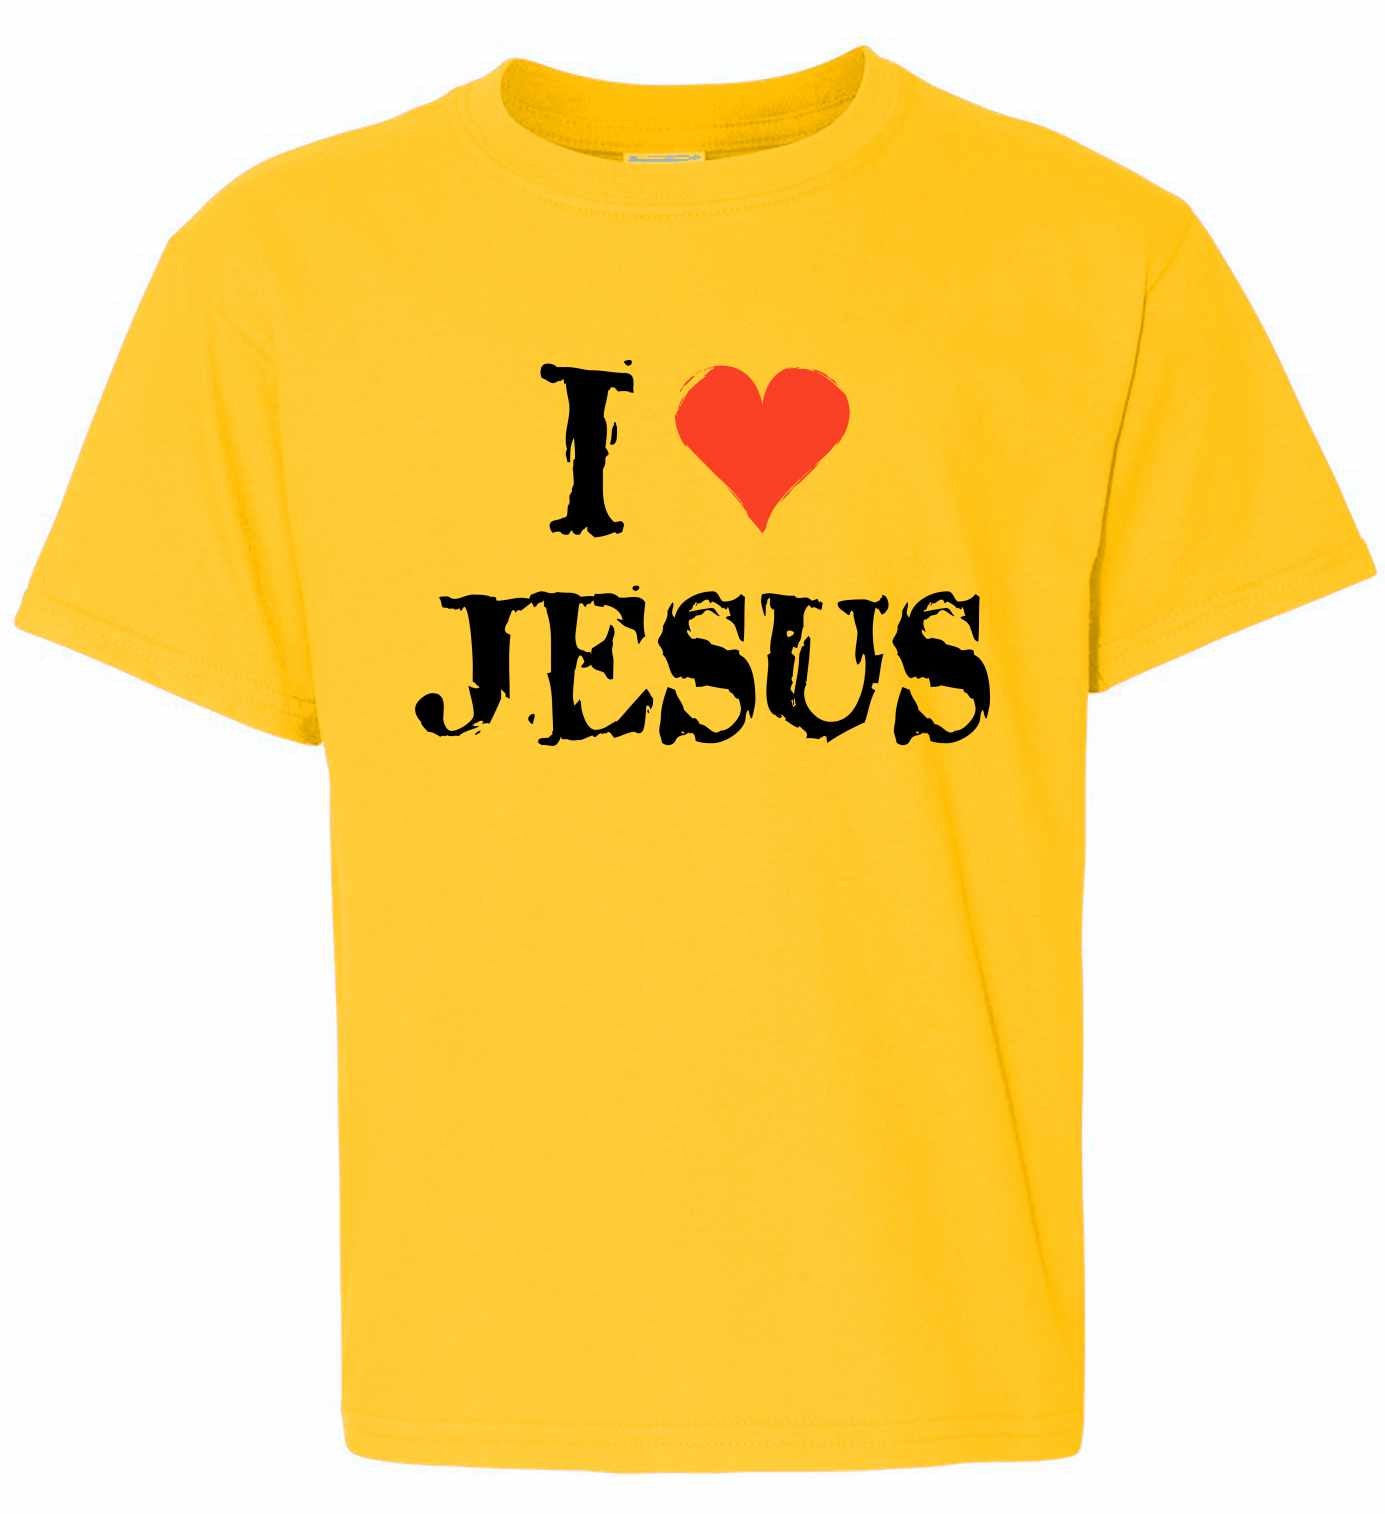 I Love Jesus on Kids T-Shirt (#971-201)